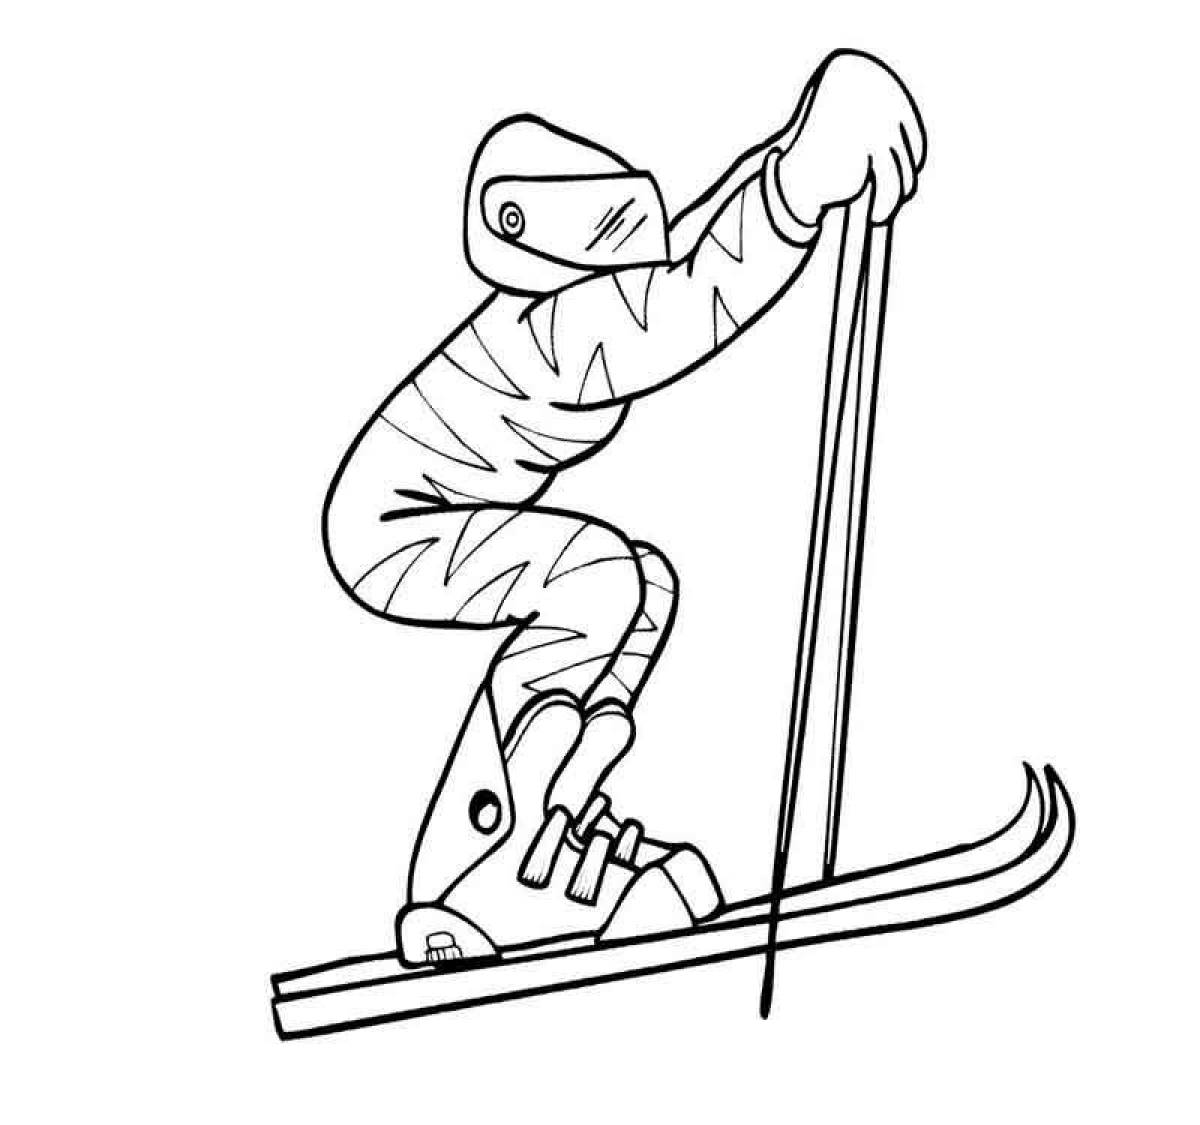 Раскраска лыжник